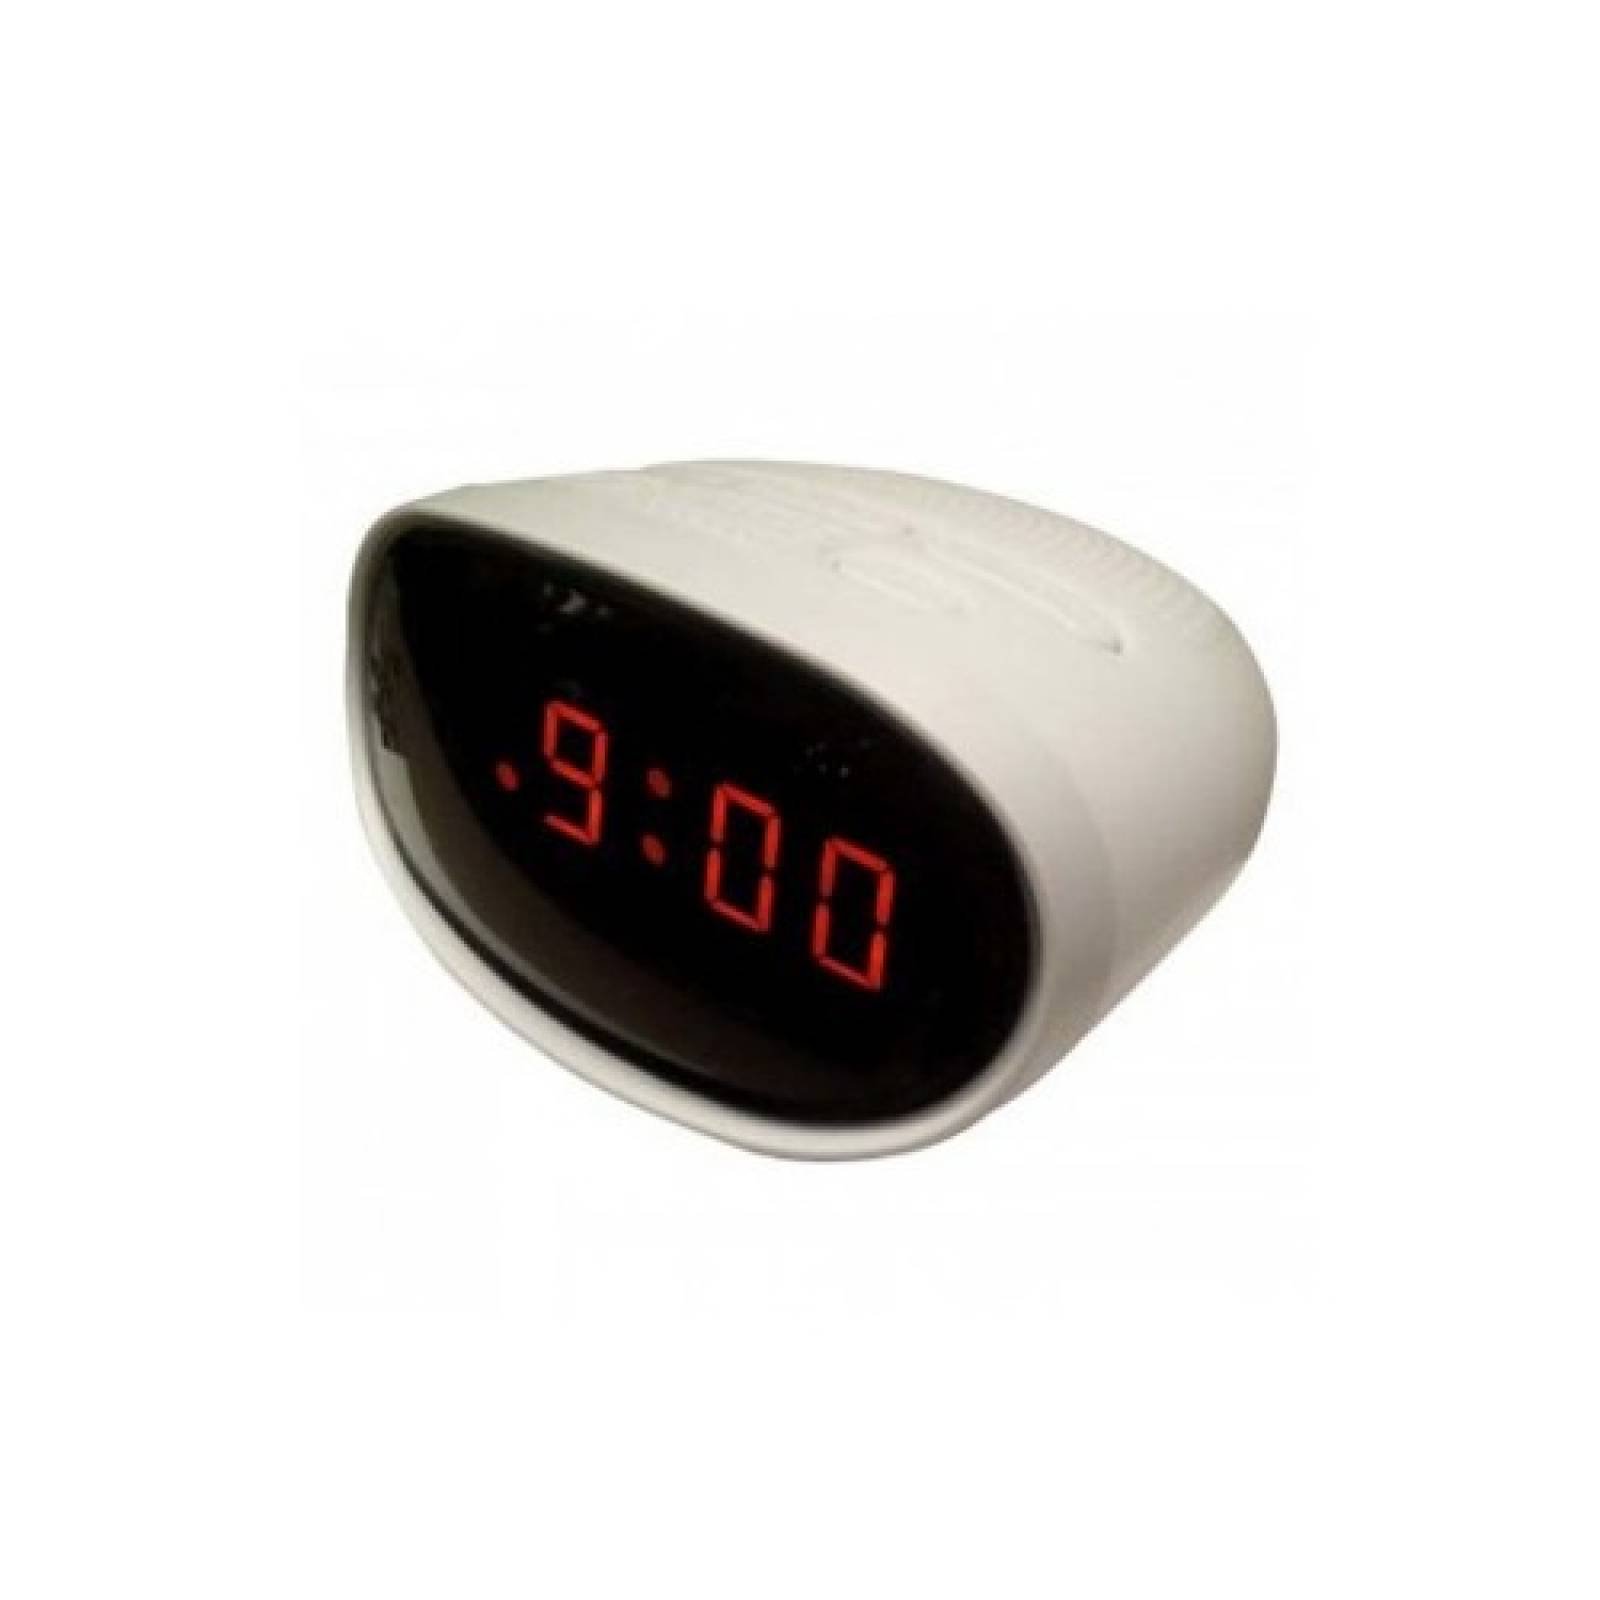 Reloj Despertador Radio AM/FM RCA 6" RC2012 Reacondicionado